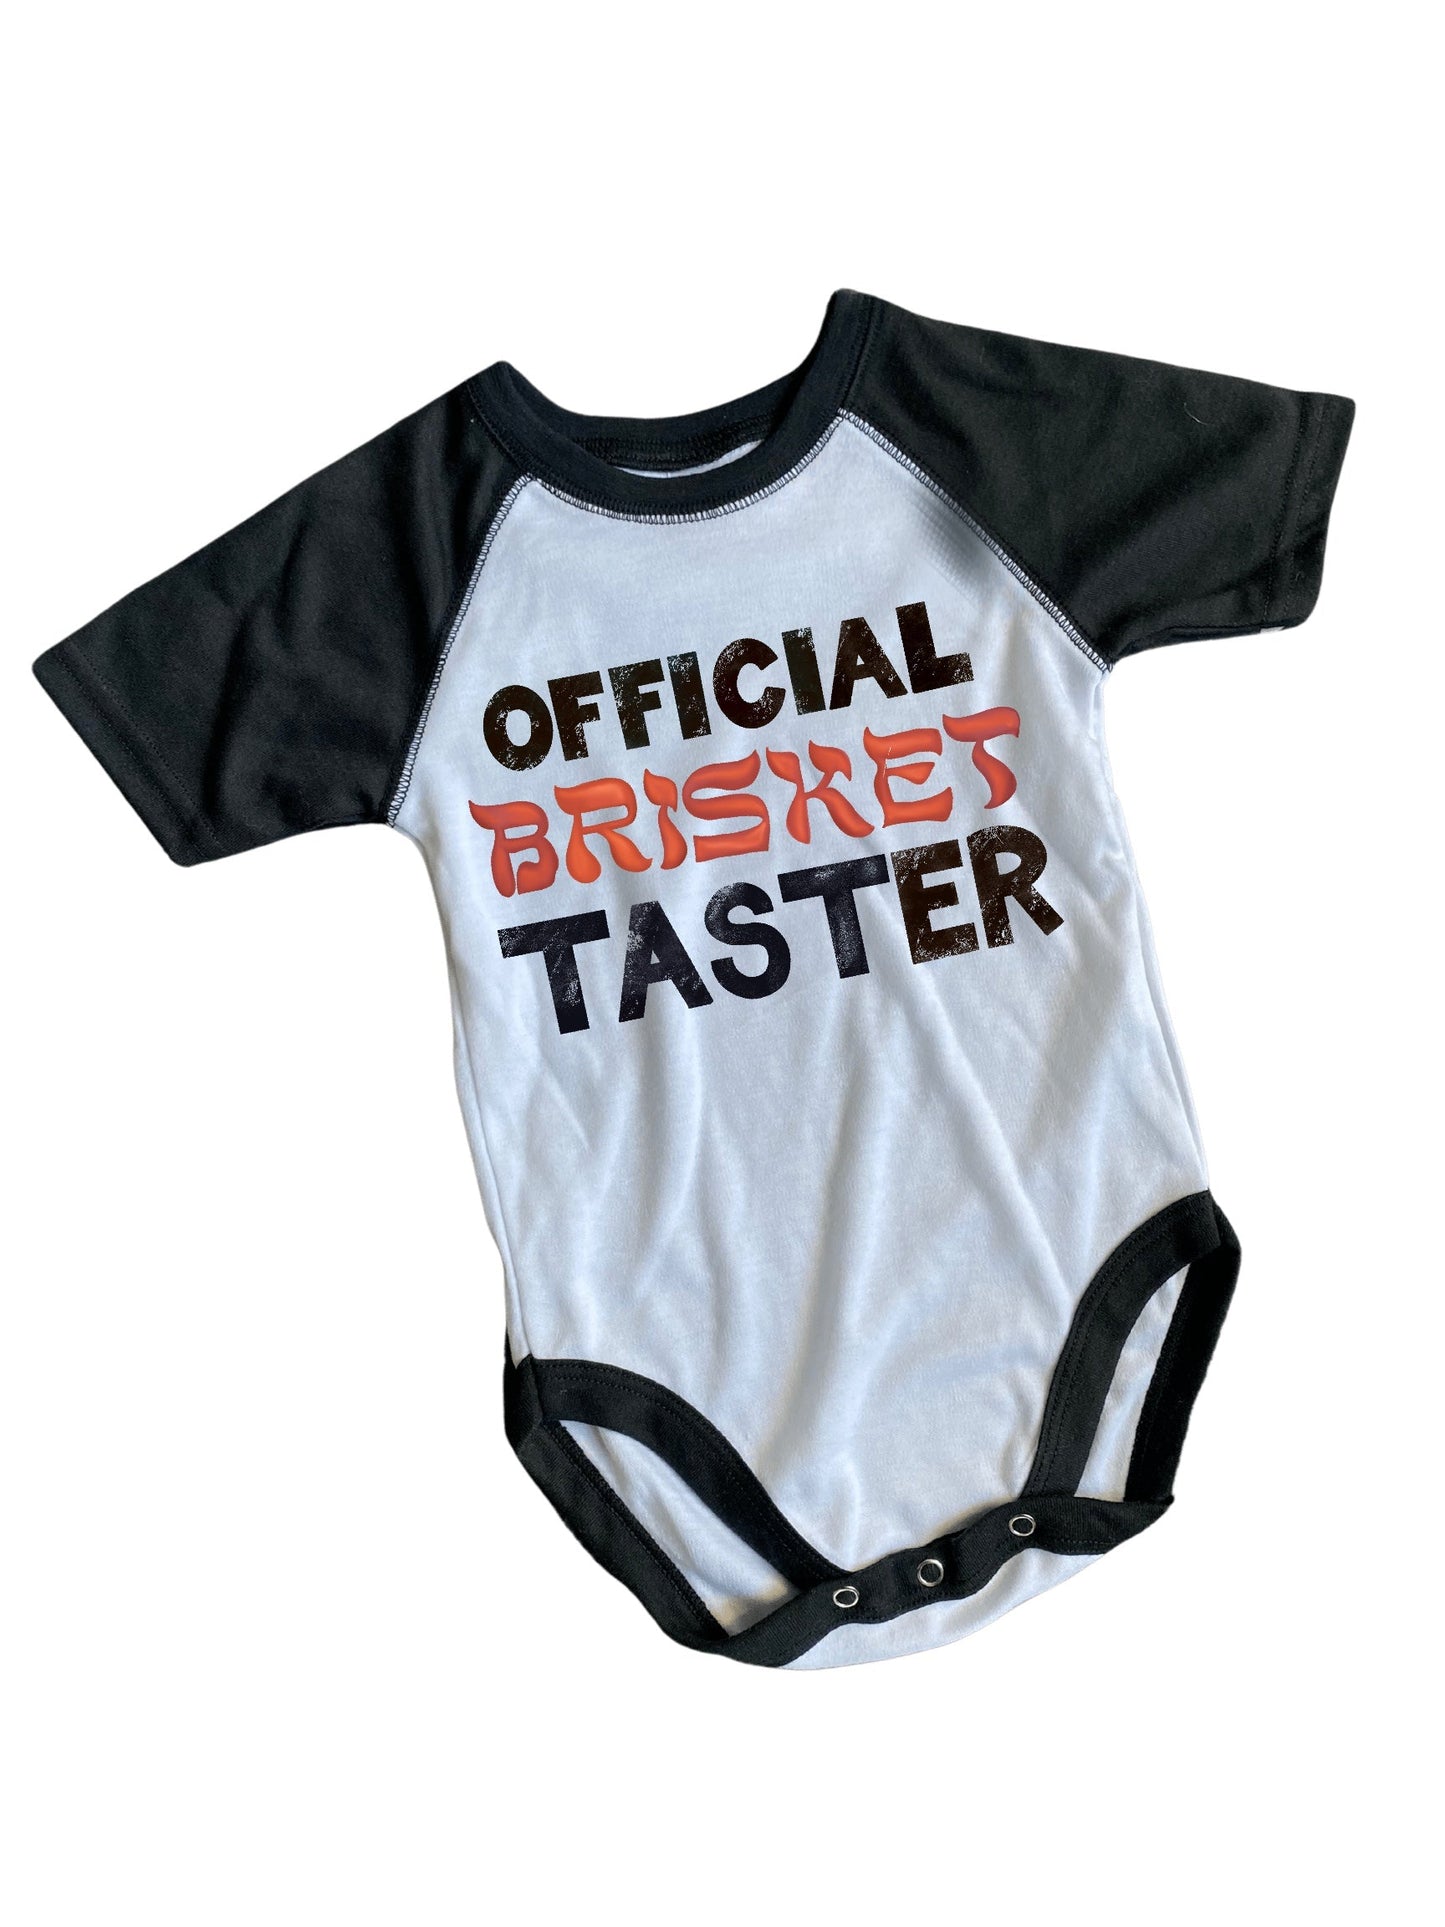 Official Brisket Taster Infant Romper